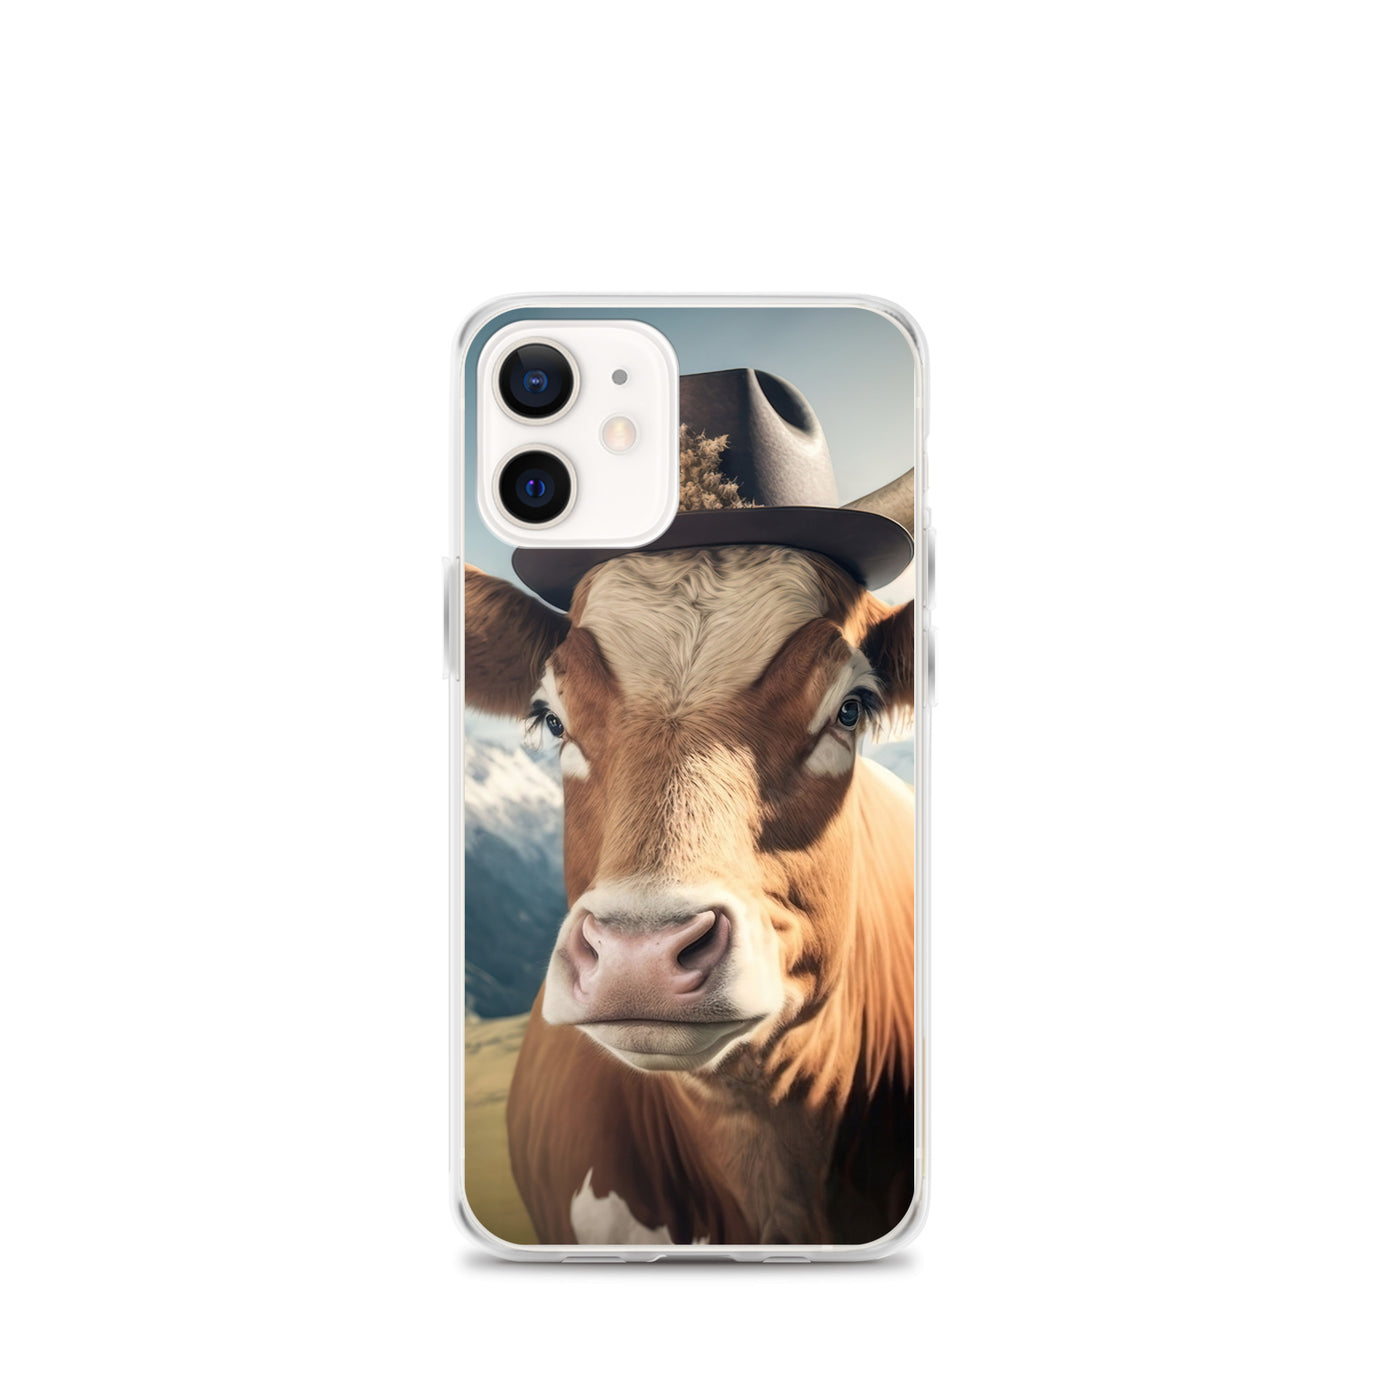 Kuh mit Hut in den Alpen - Berge im Hintergrund - Landschaftsmalerei - iPhone Schutzhülle (durchsichtig) berge xxx iPhone 12 mini